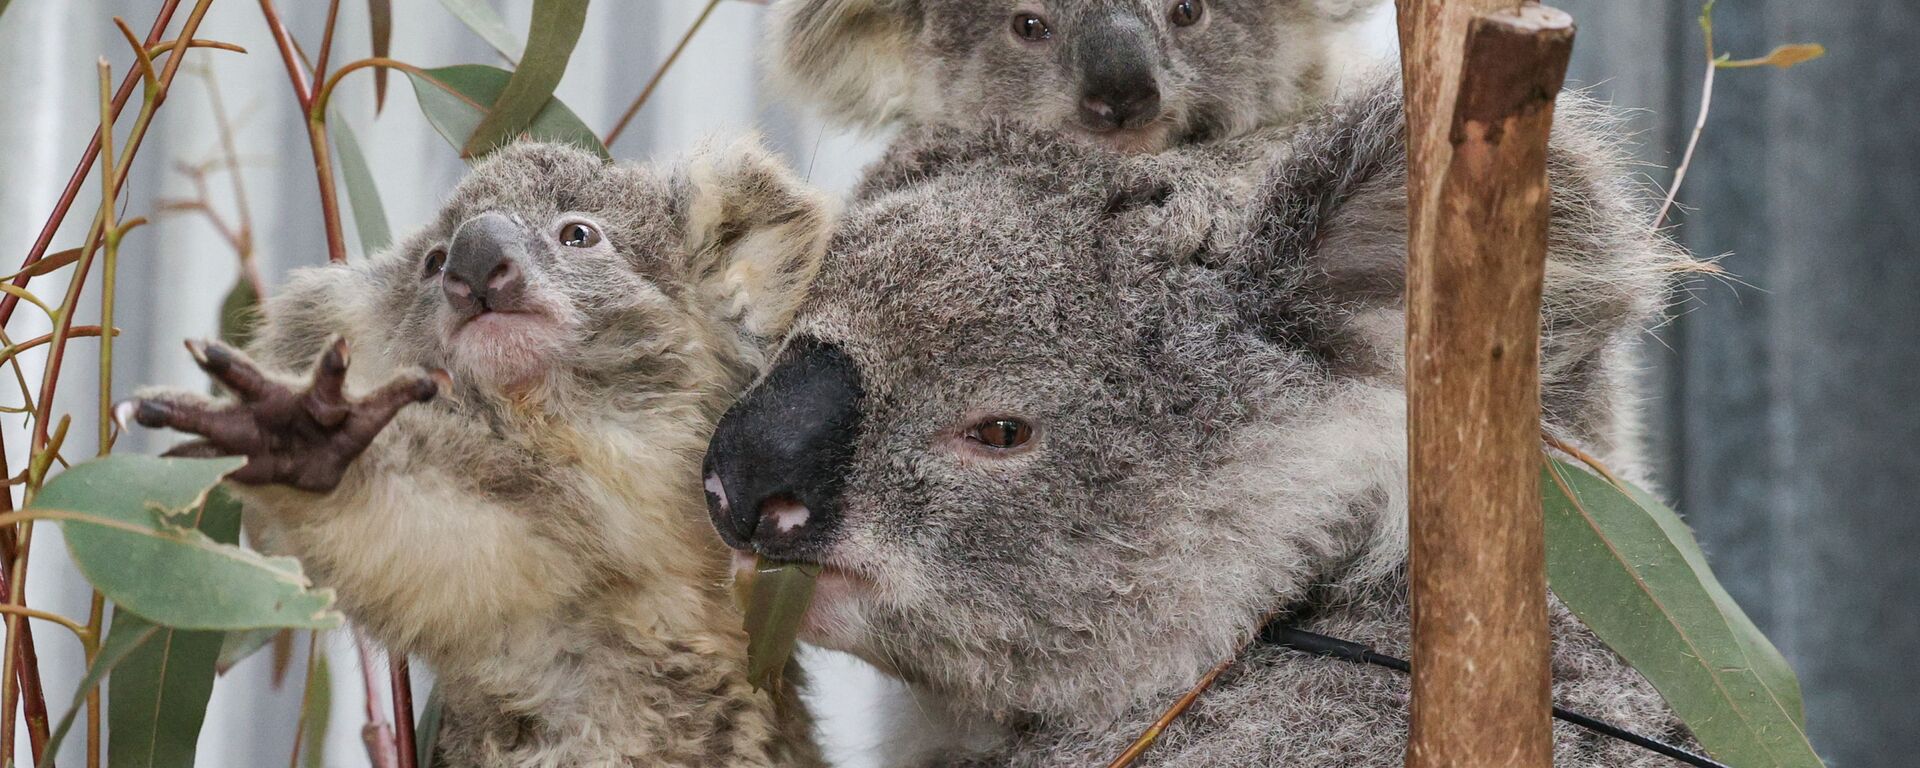 ¿Cómo rescatan a los koalas afectados por los incendios forestales? - Sputnik Mundo, 1920, 20.10.2020